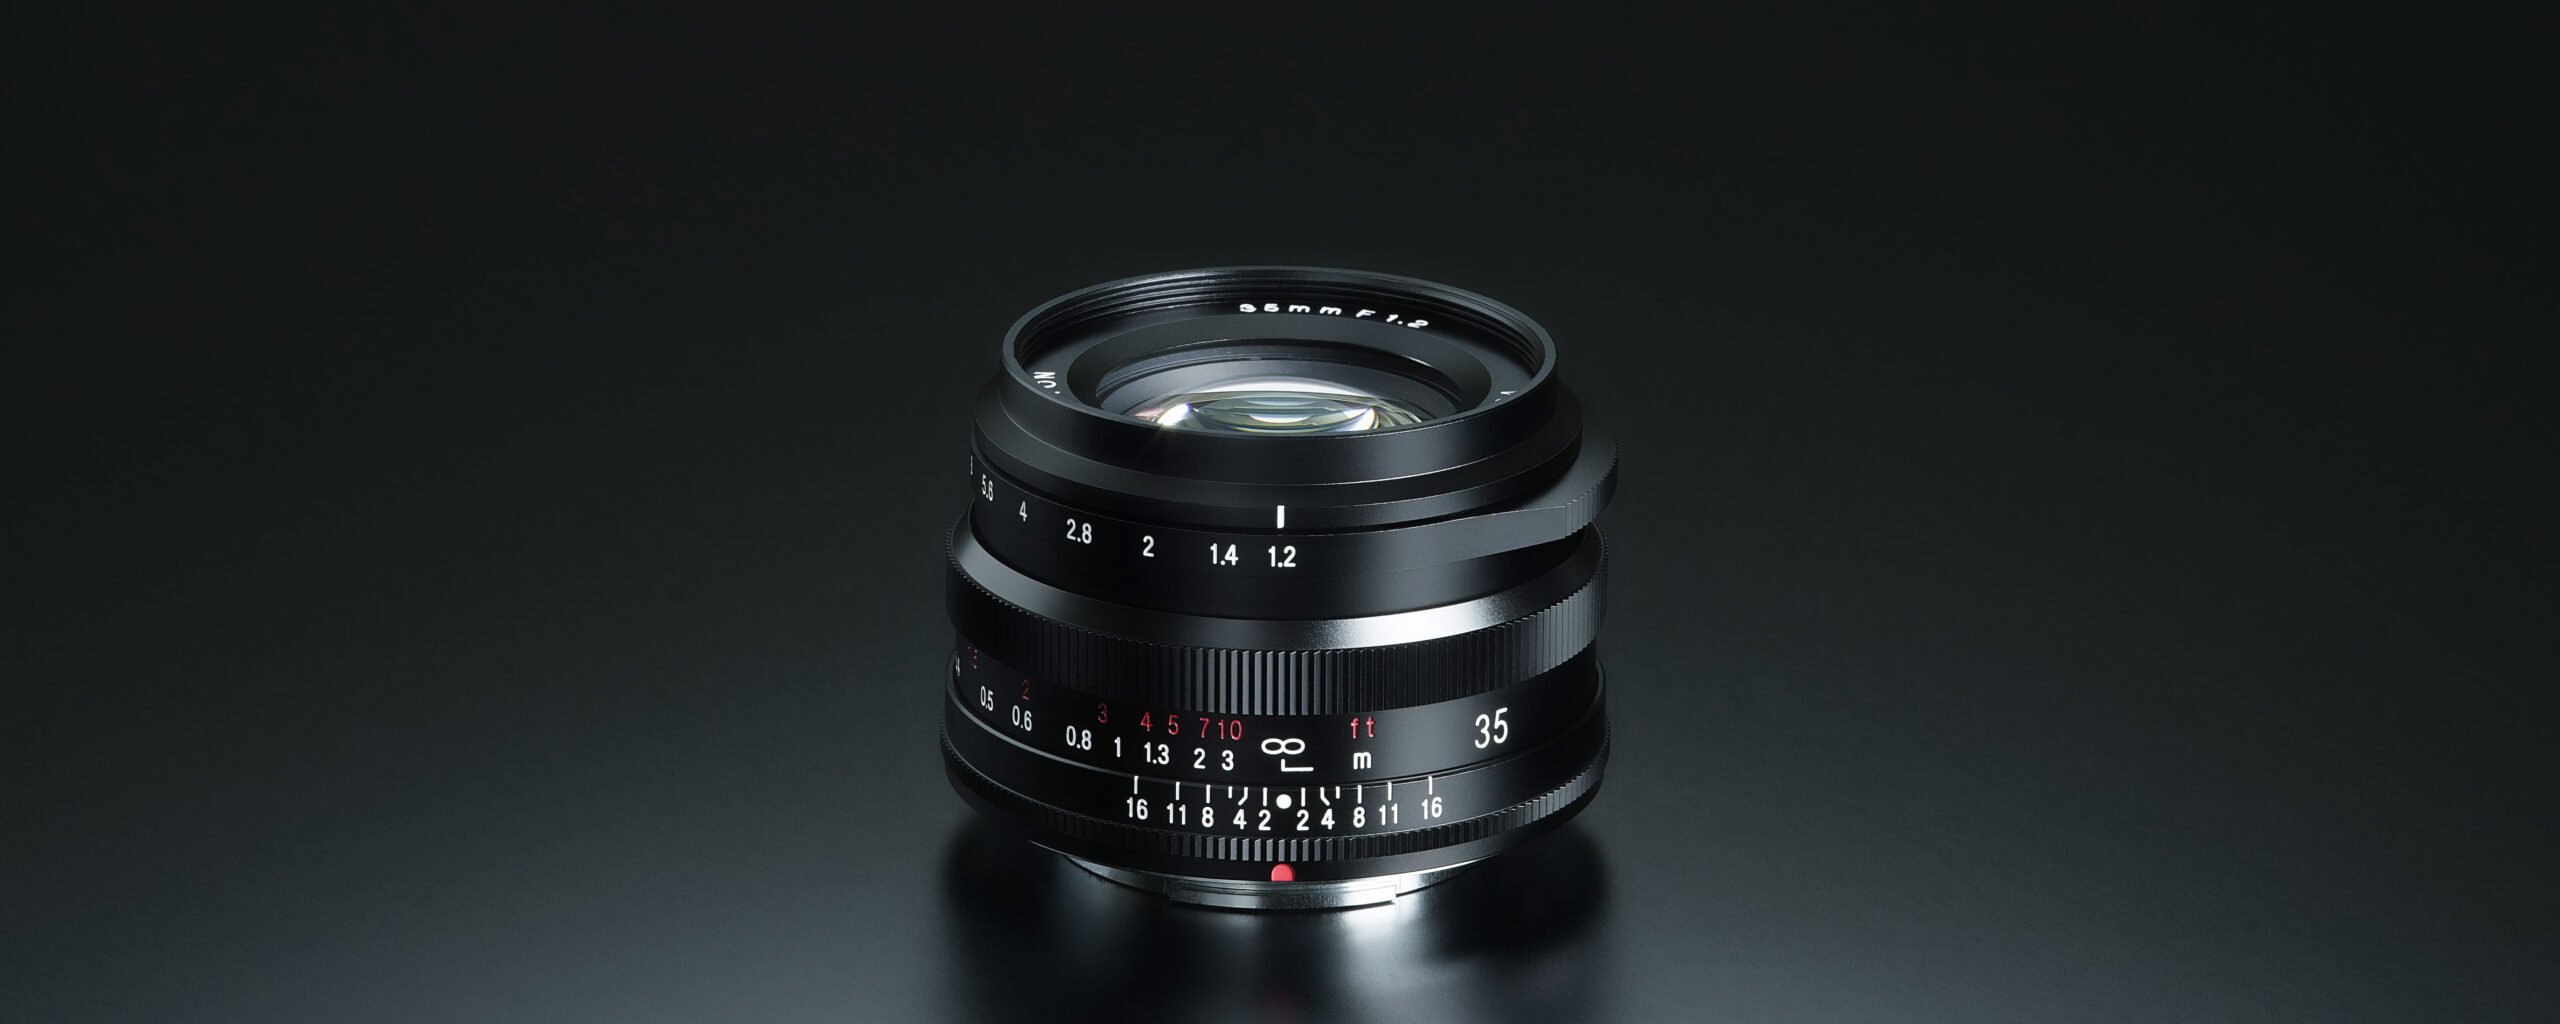 カメラ レンズ(単焦点) NOKTON 35mm F1.2 - 株式会社コシナ